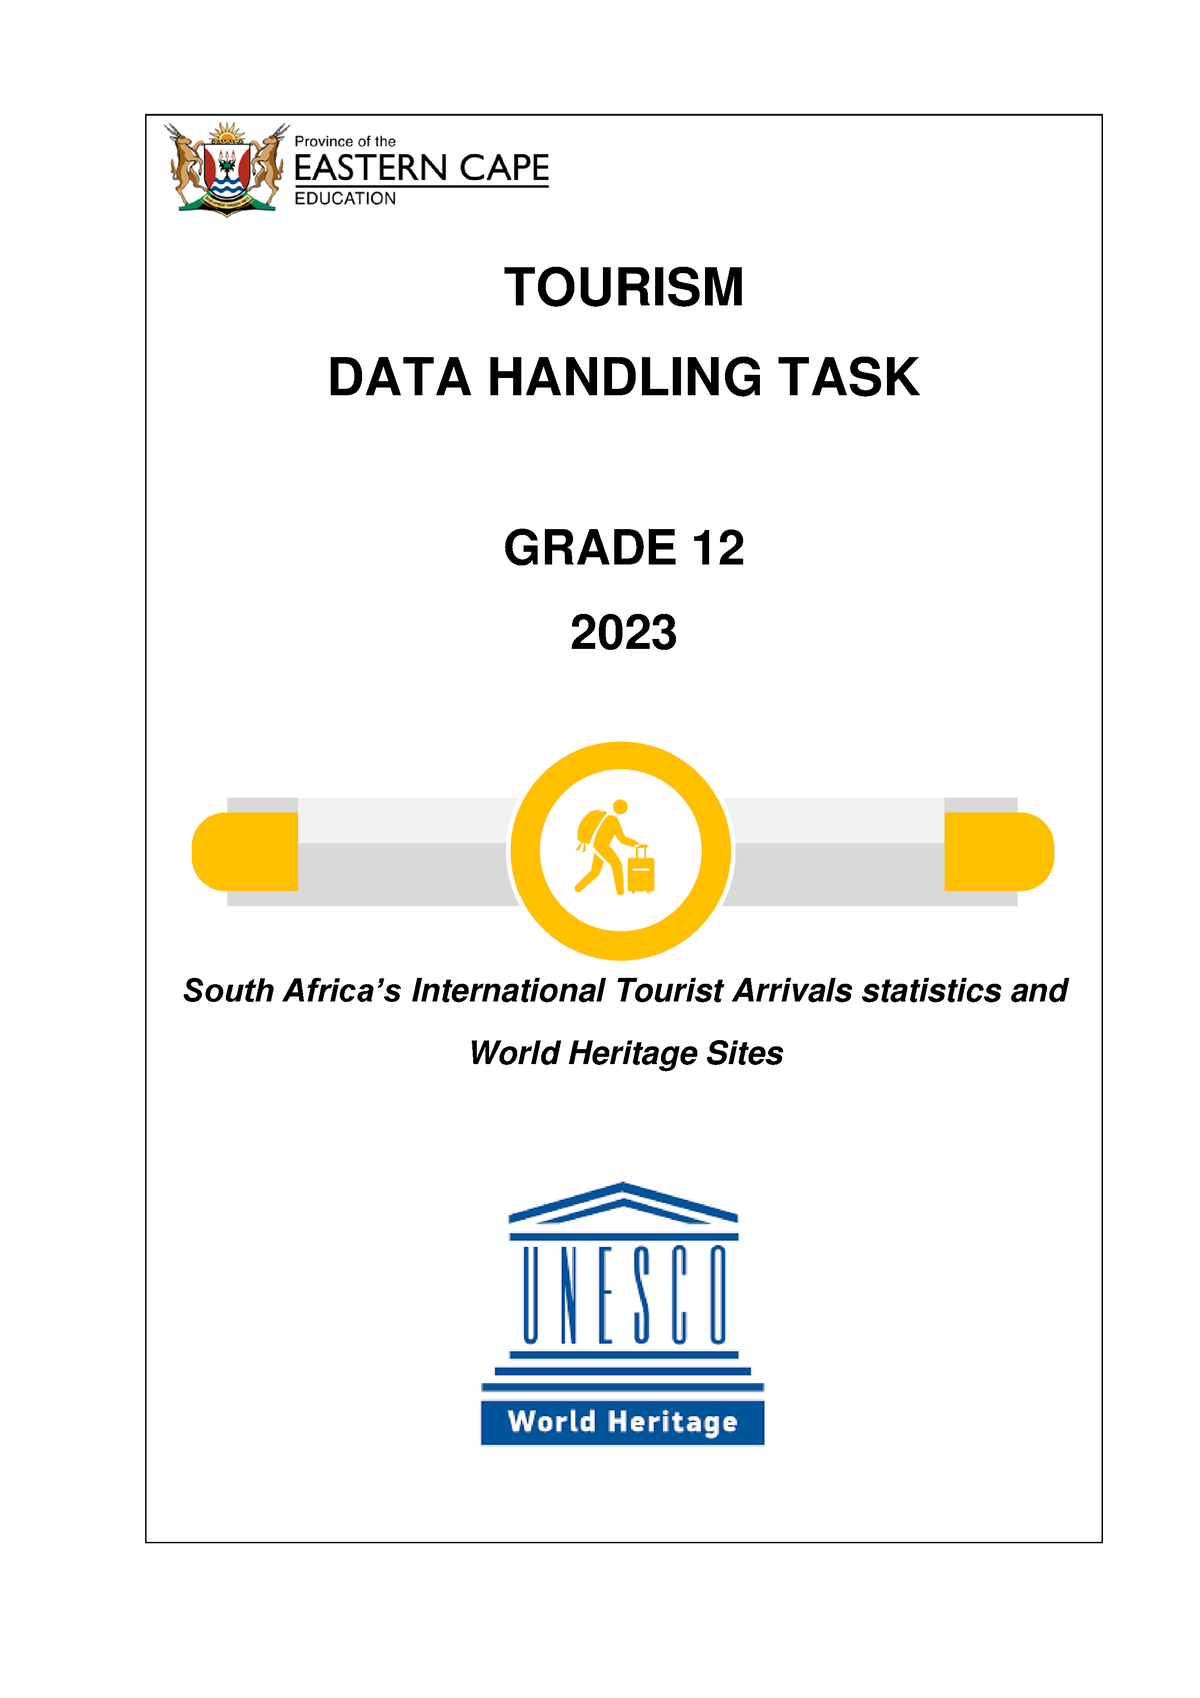 tourism task data handling